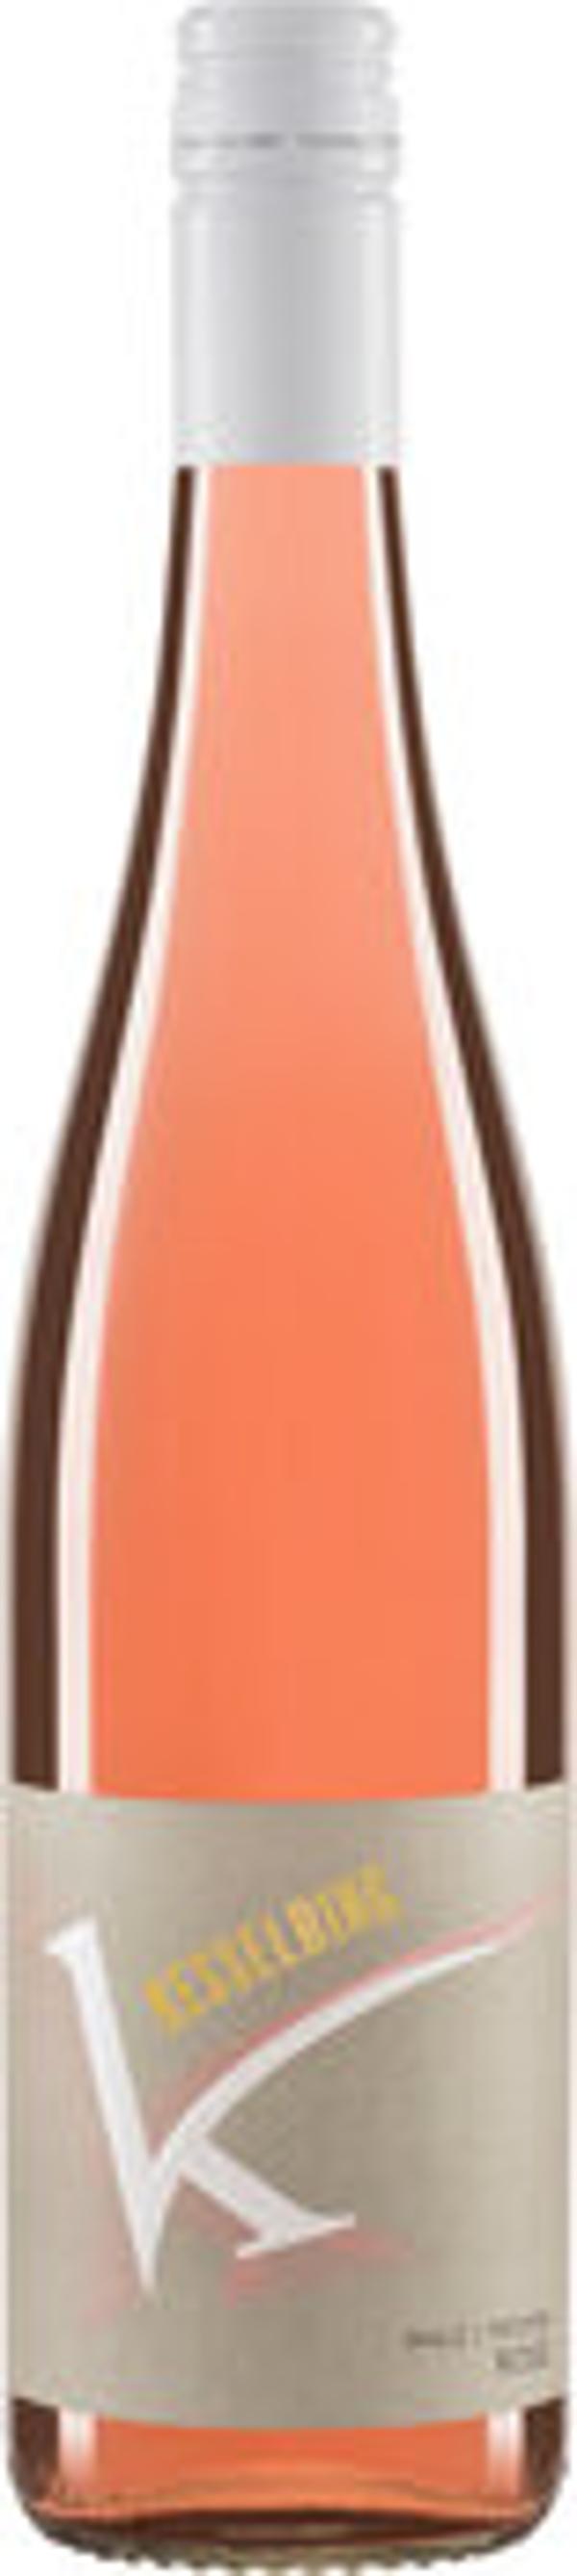 Produktfoto zu Kiste Pfälzer Rosé Kesselring Qualitätswein mild 6*0,75l